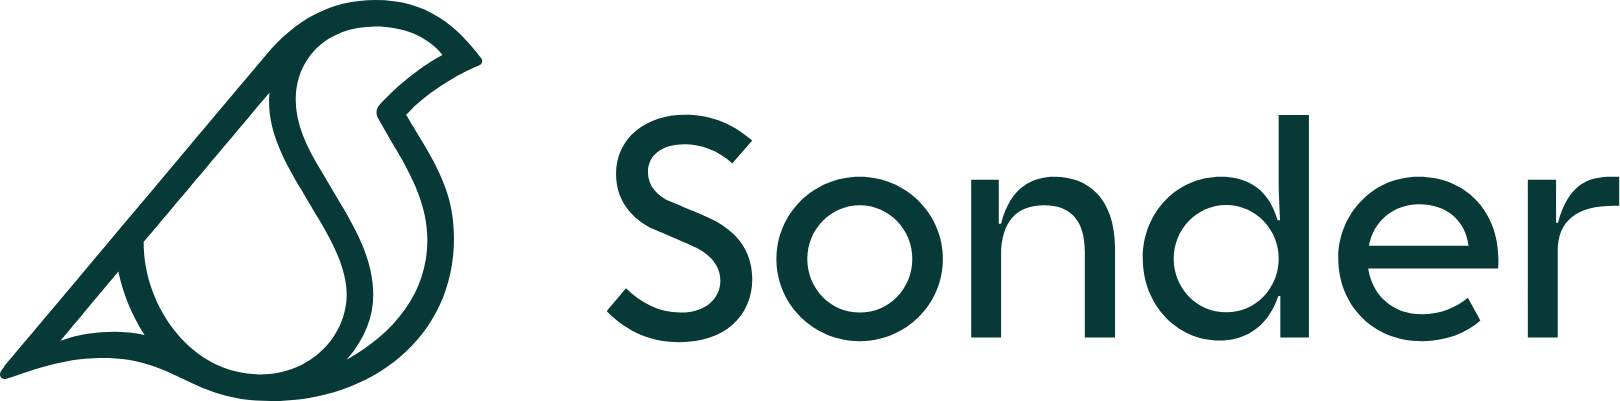 Sonder Holdings logo large (transparent PNG)